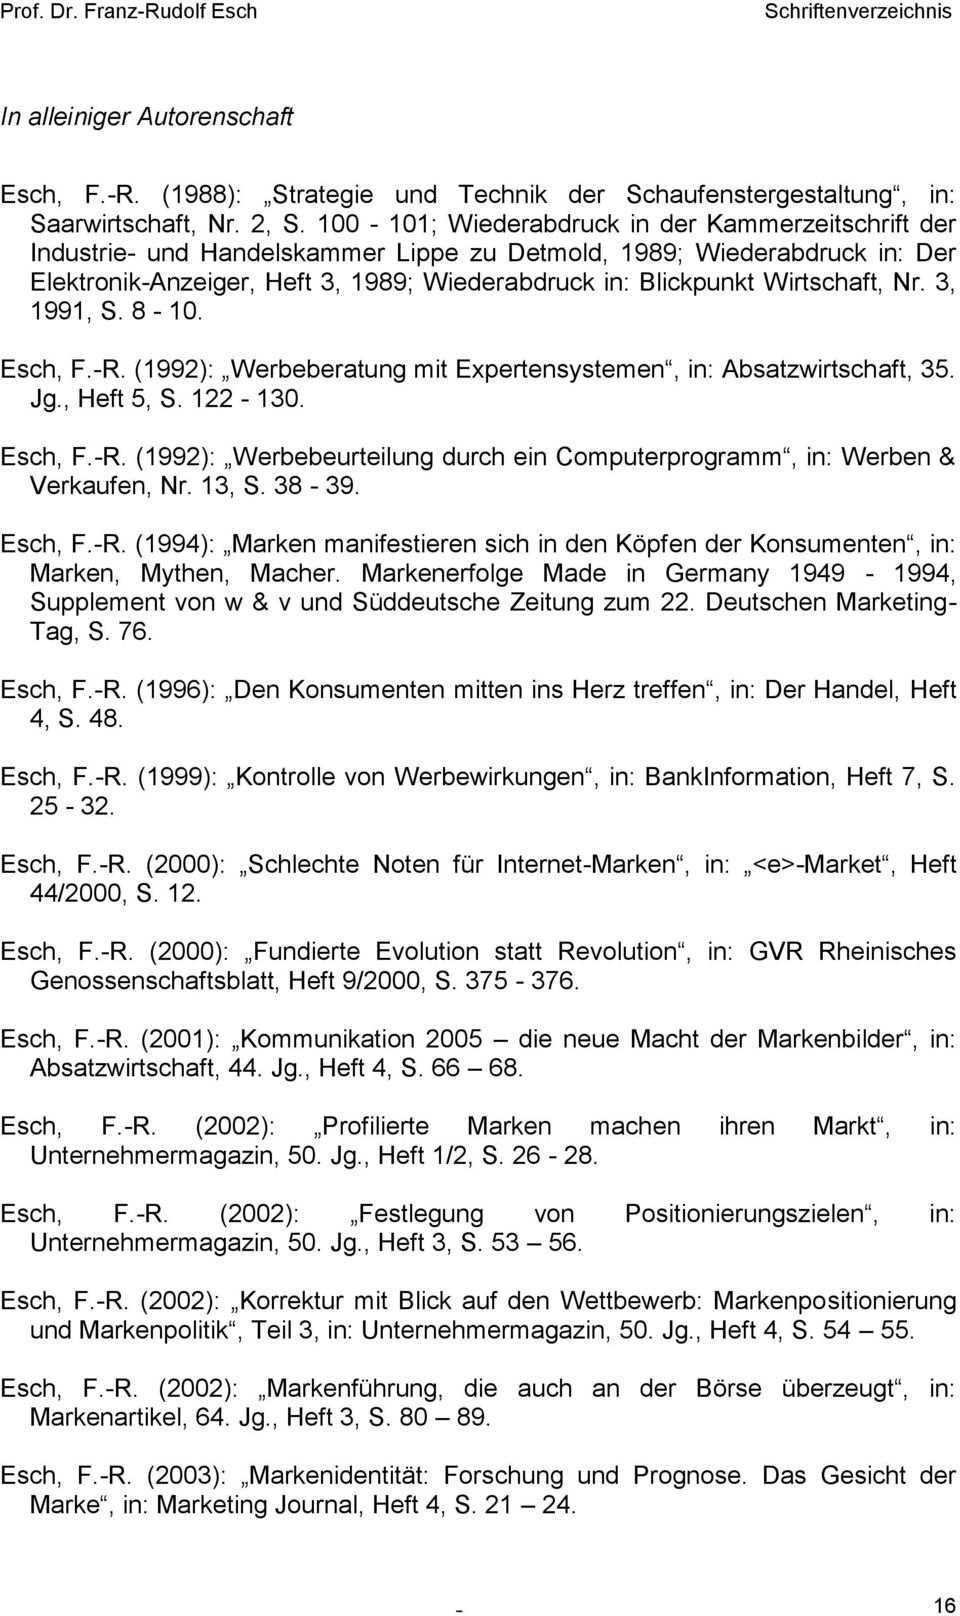 Wirtschaft, Nr. 3, 1991, S. 8-10. Esch, F.-R. (1992): Werbeberatung mit Expertensystemen, in: Absatzwirtschaft, 35. Jg., Heft 5, S. 122-130. Esch, F.-R. (1992): Werbebeurteilung durch ein Computerprogramm, in: Werben & Verkaufen, Nr.